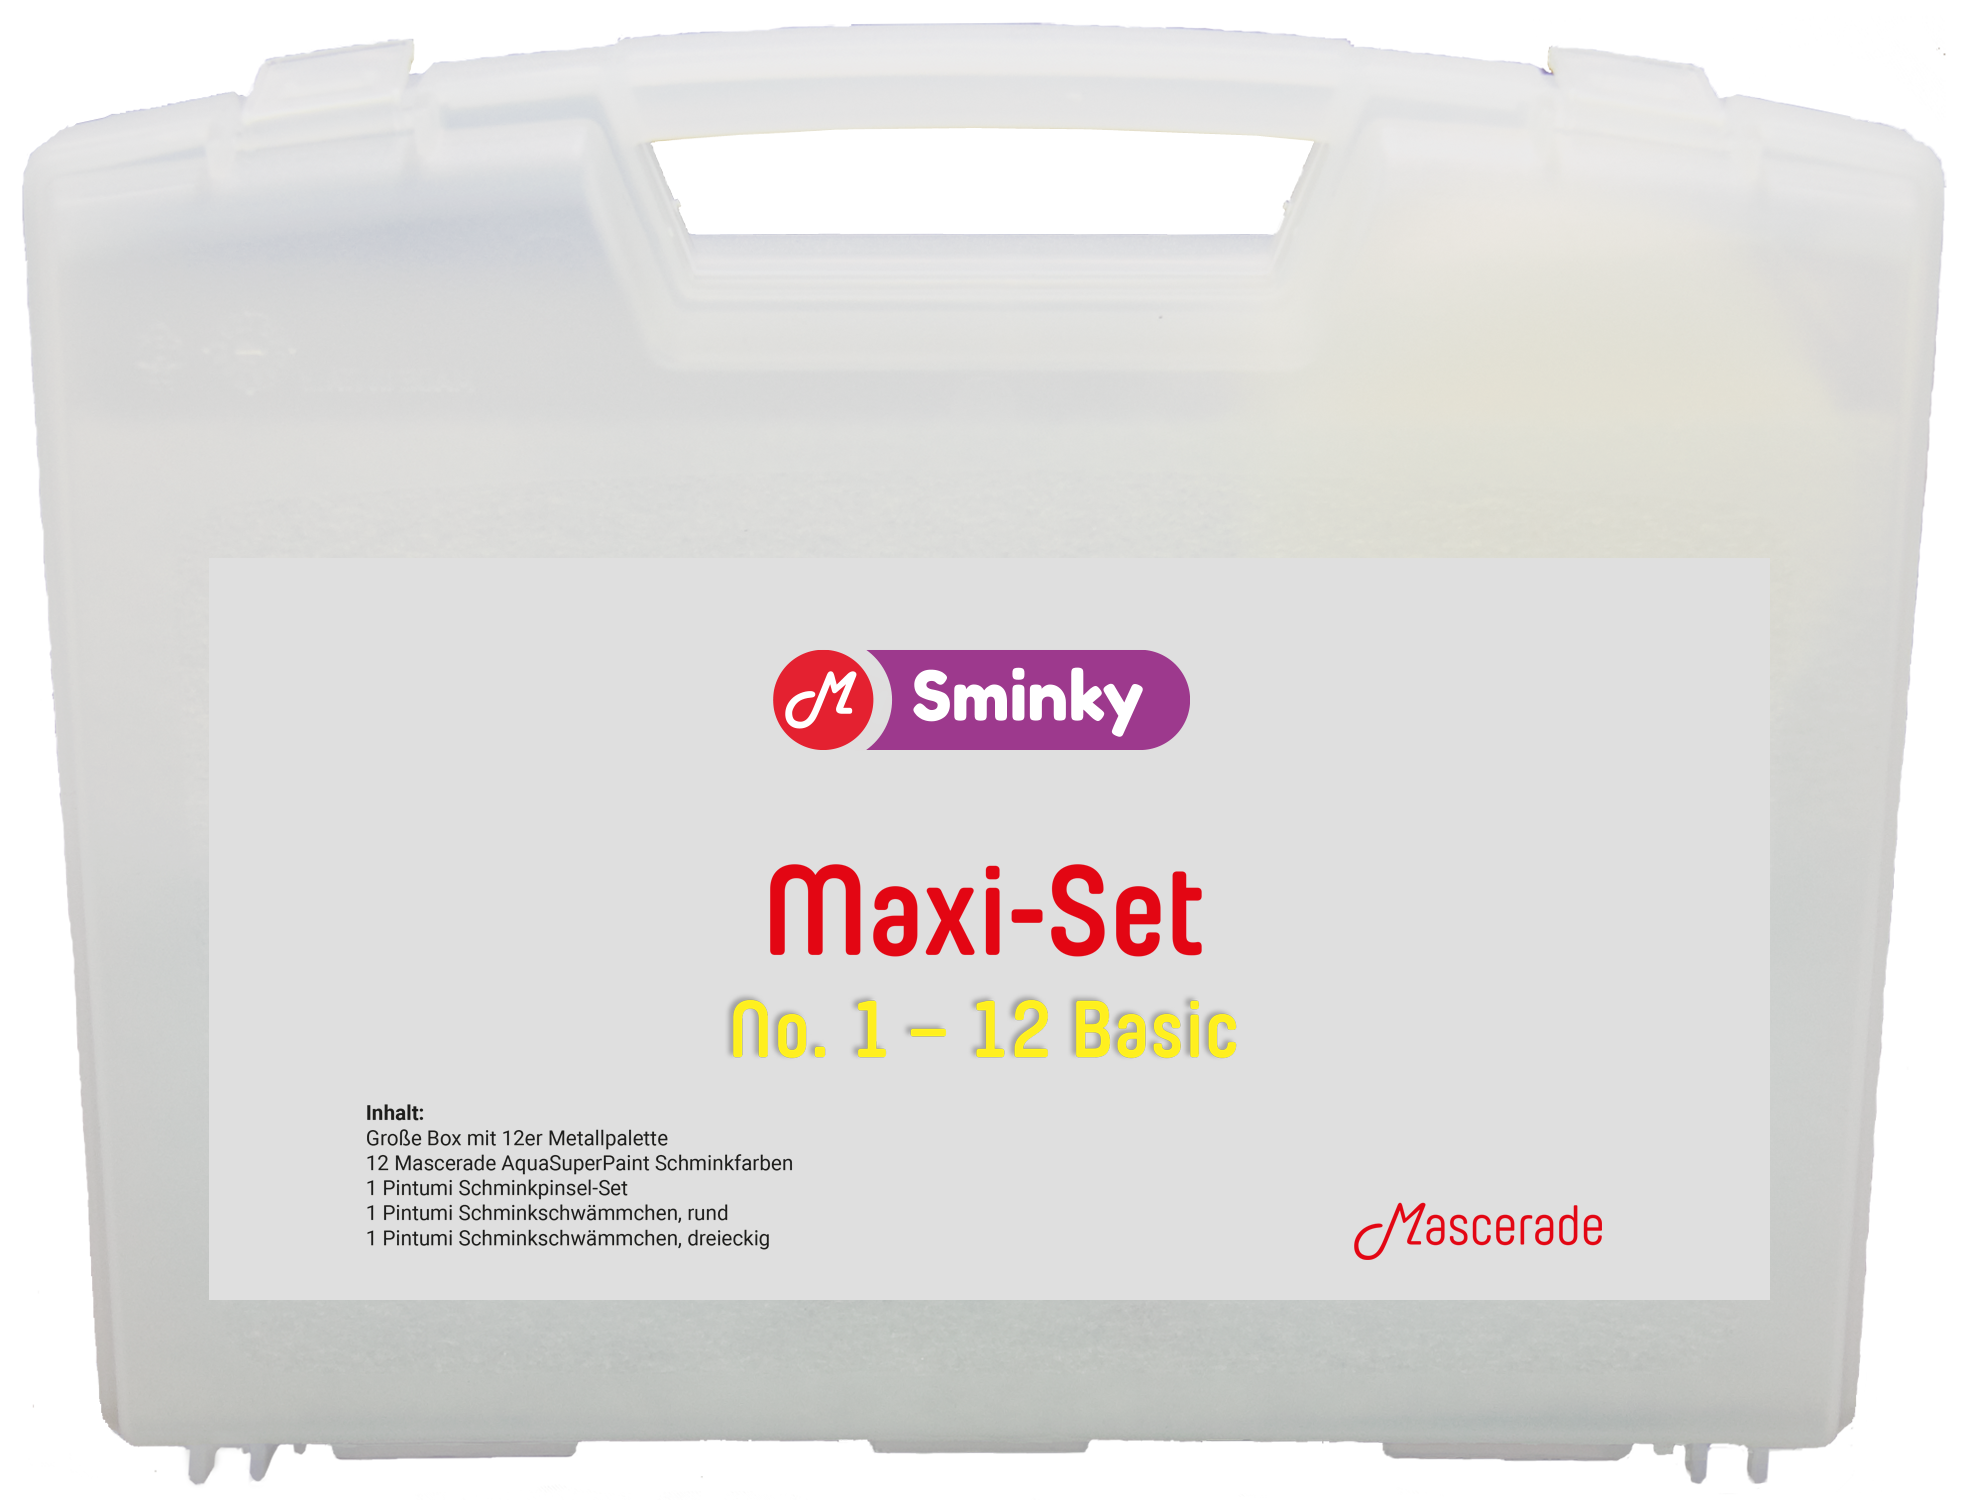 Mascerade Sminky Maxi-Set No.1 mit AquaSuperPaint Schminkpalette 1, SET-MAXI-1